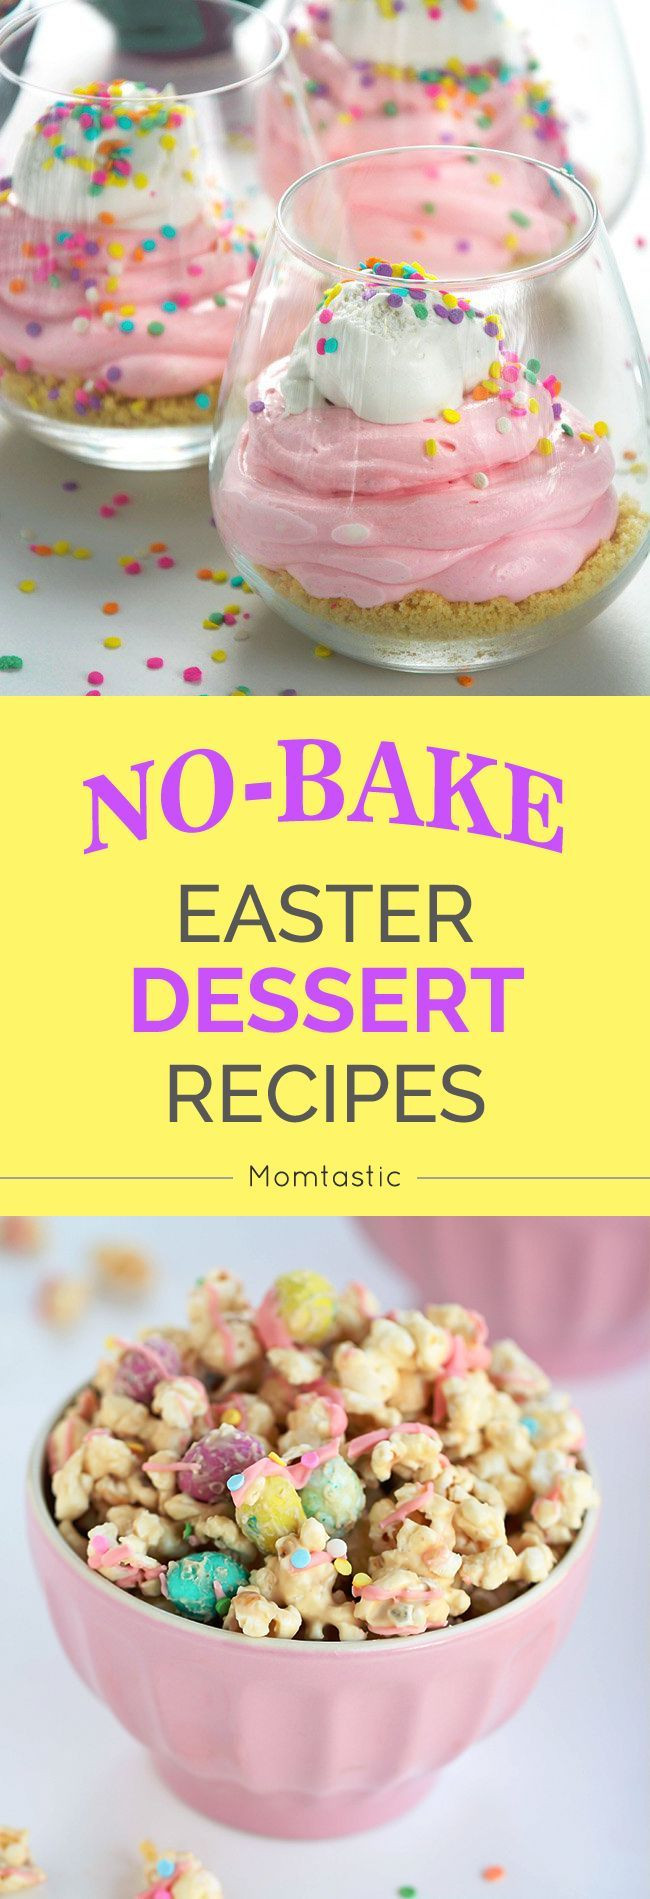 No Bake Easter Desserts
 15 No Bake Easter Dessert Recipes